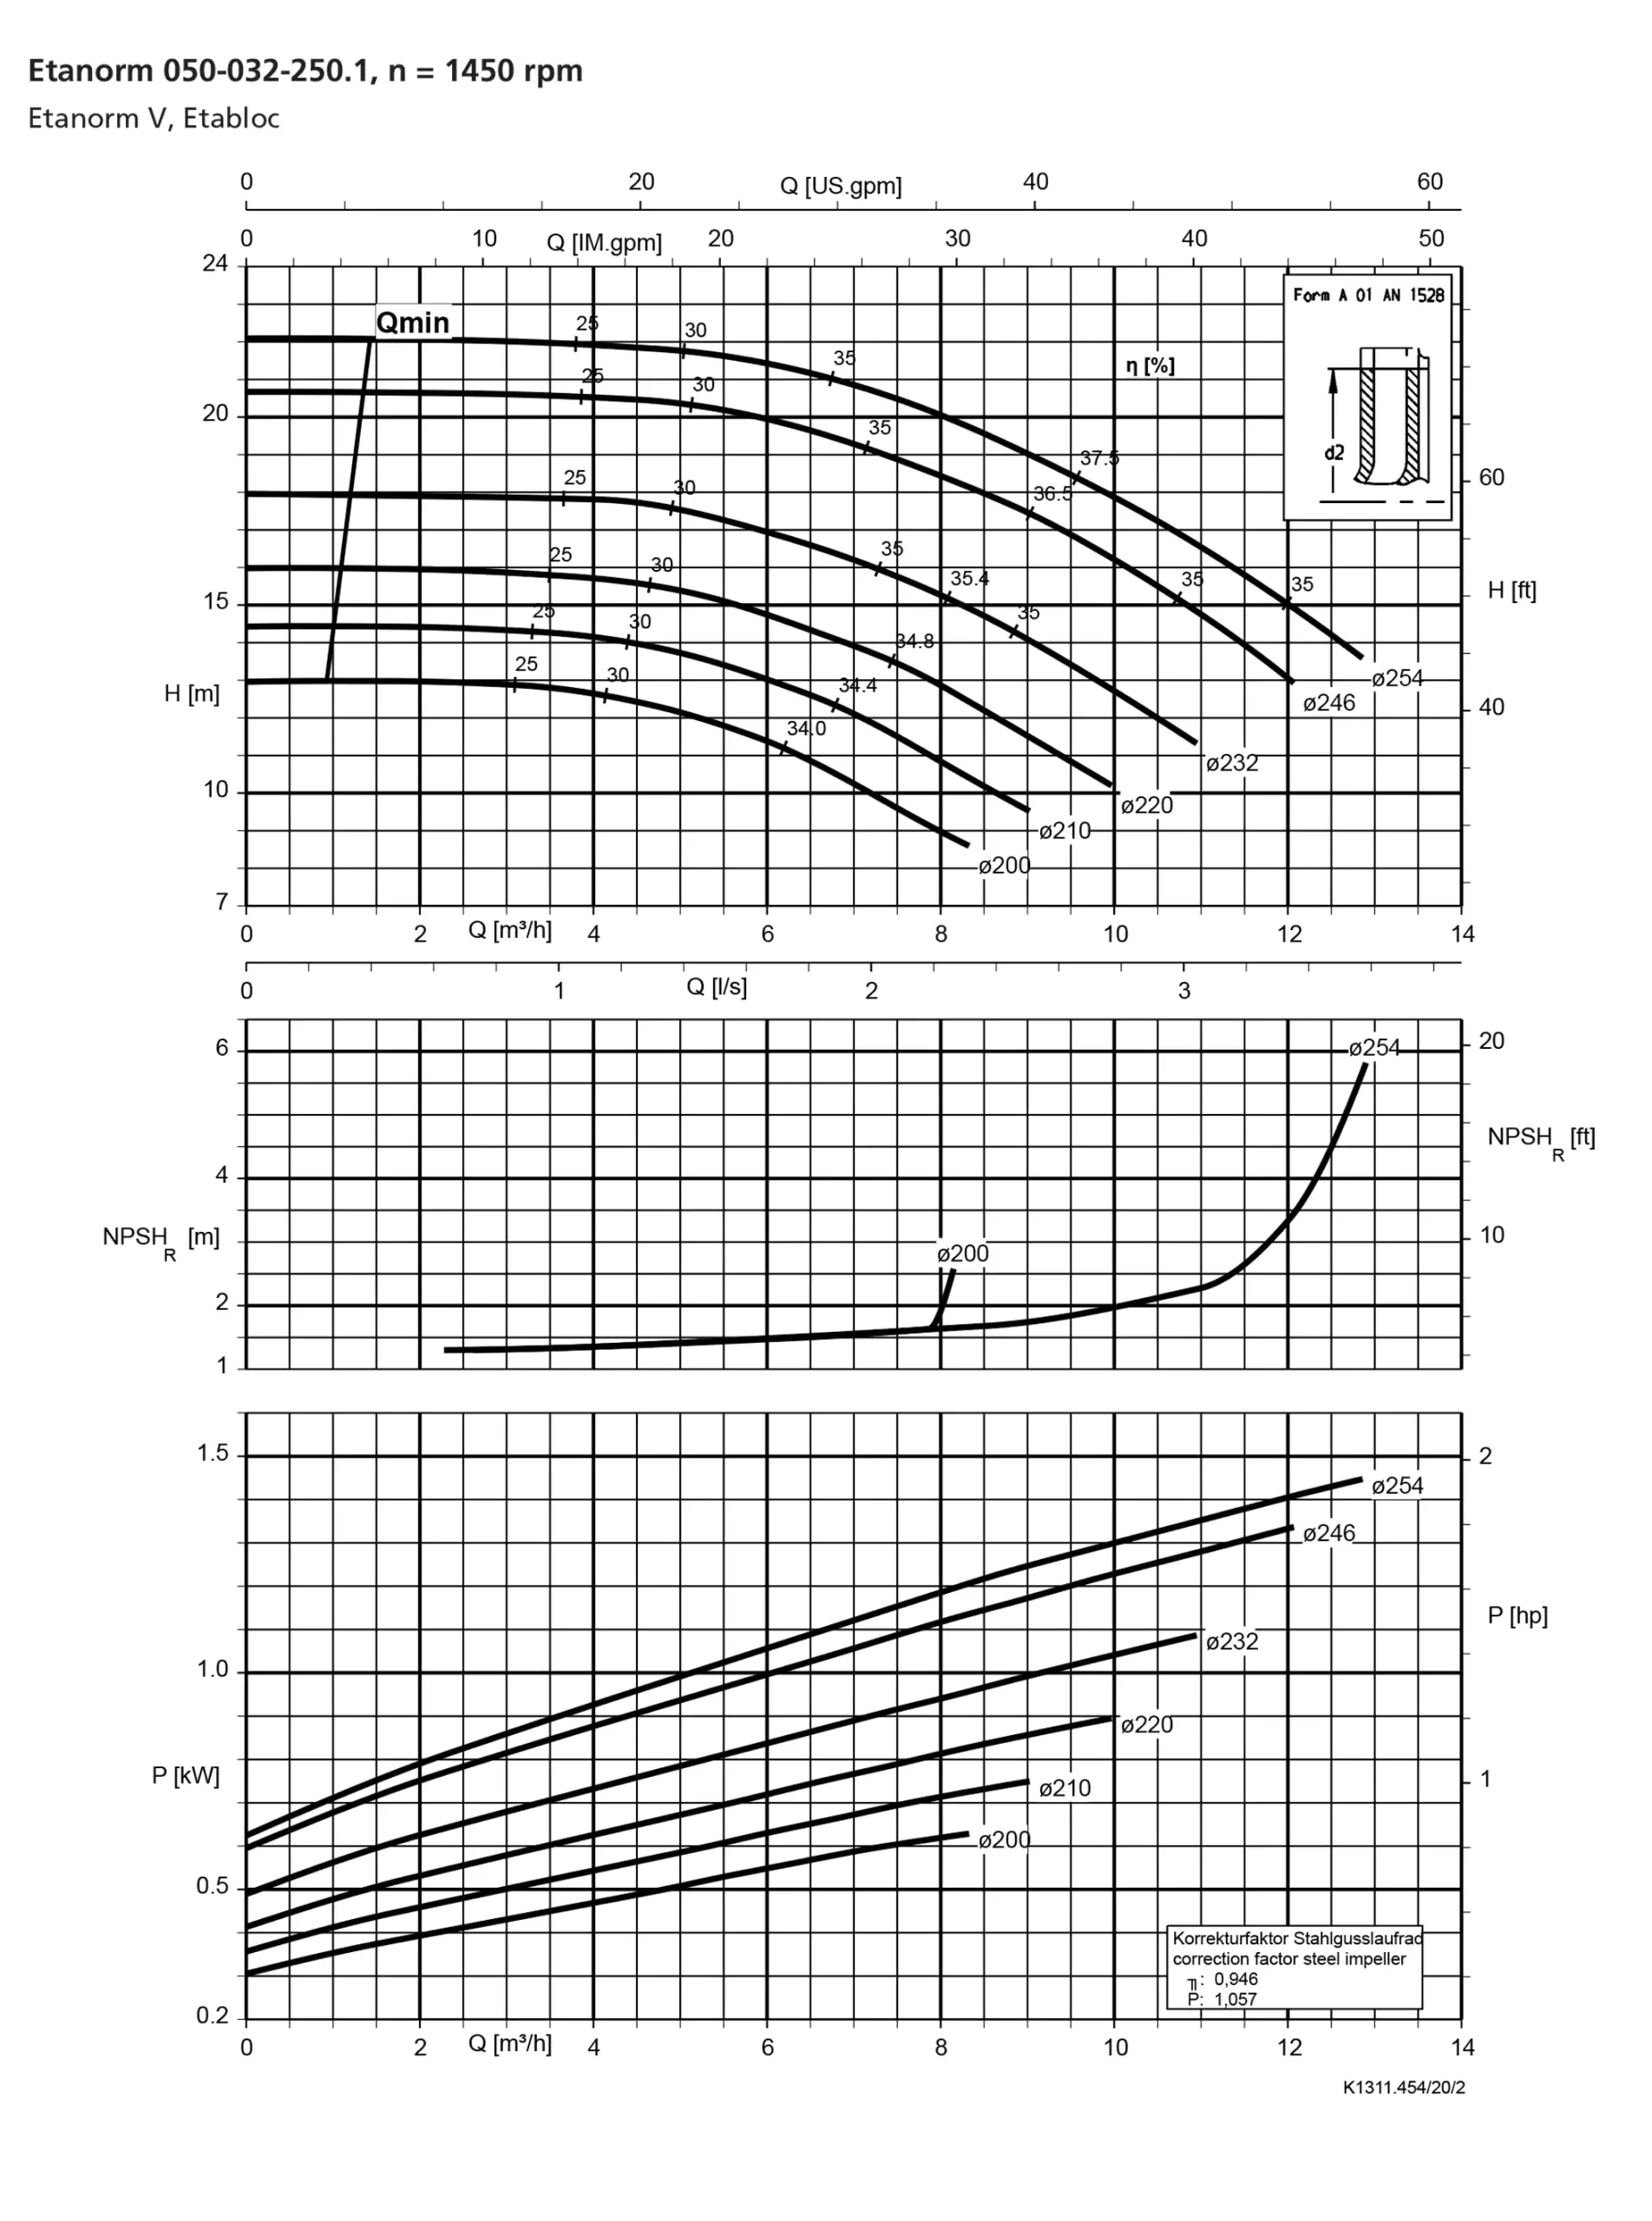 نمودار-کارکرد-پمپ-etanorm-syt-50-32-250-1-1450